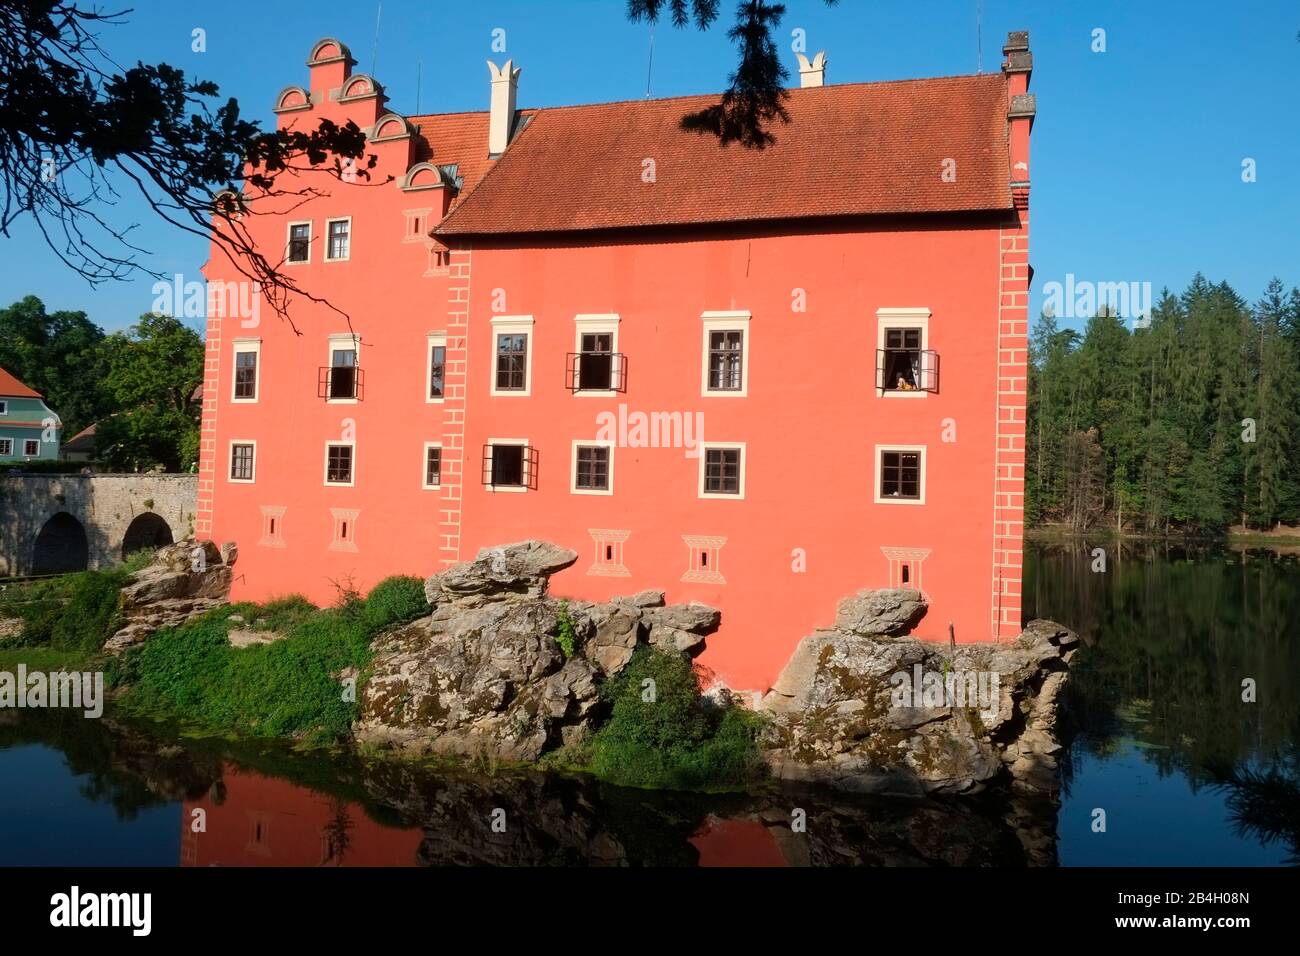 Cervena Lhota Chateau, Tschechien. Das aus dem gotischen Fort im 16. Jahrhundert wiederaufgebaute Sommerhaus war ein Ort der Unterhaltung, der Feiern und der Freizeit. Stockfoto